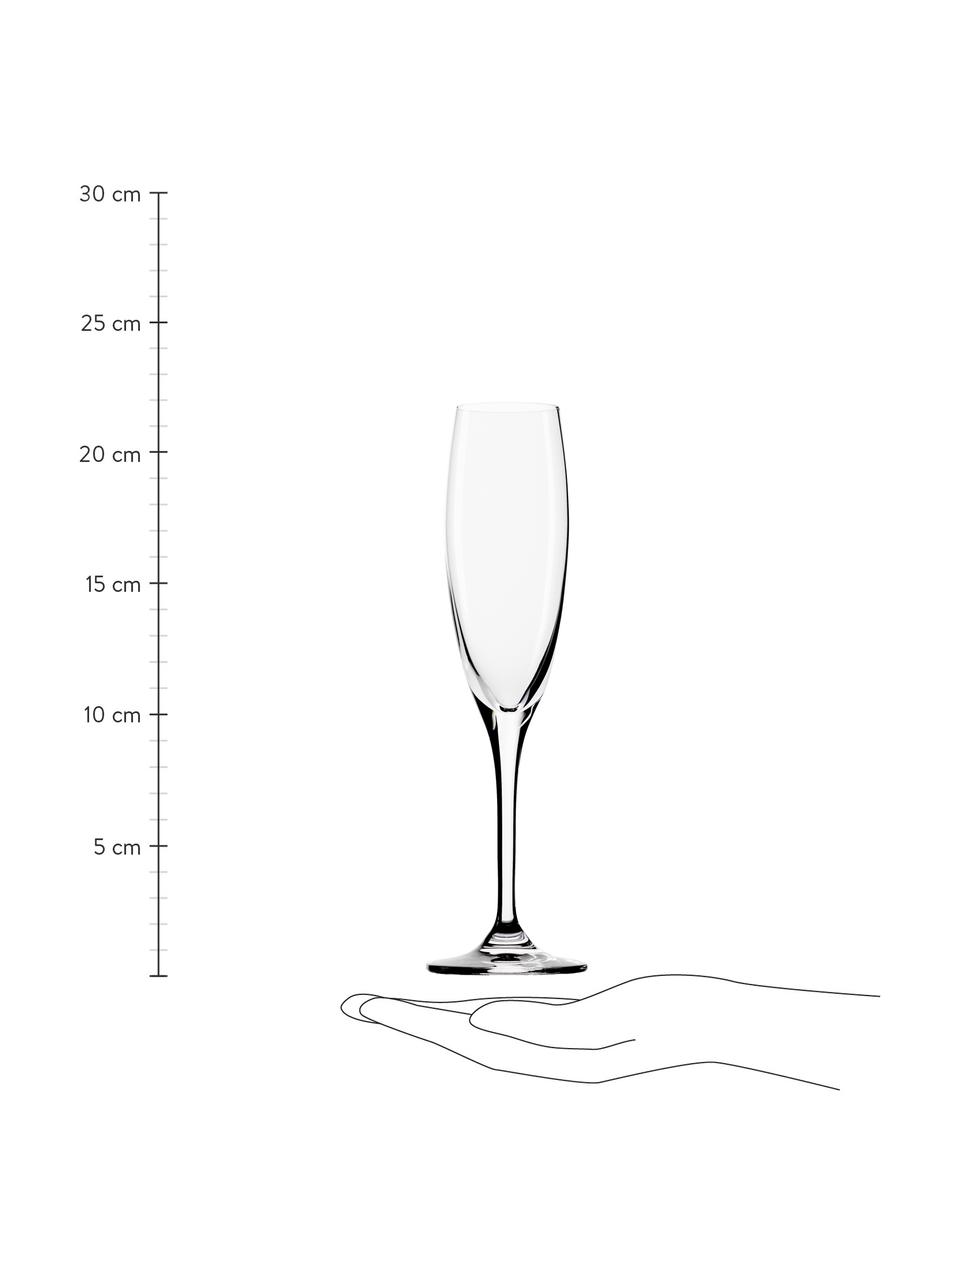 Flute champagne in cristallo Vinea 6 pz, Cristallo, Trasparente, Ø 7 x Alt. 22 cm